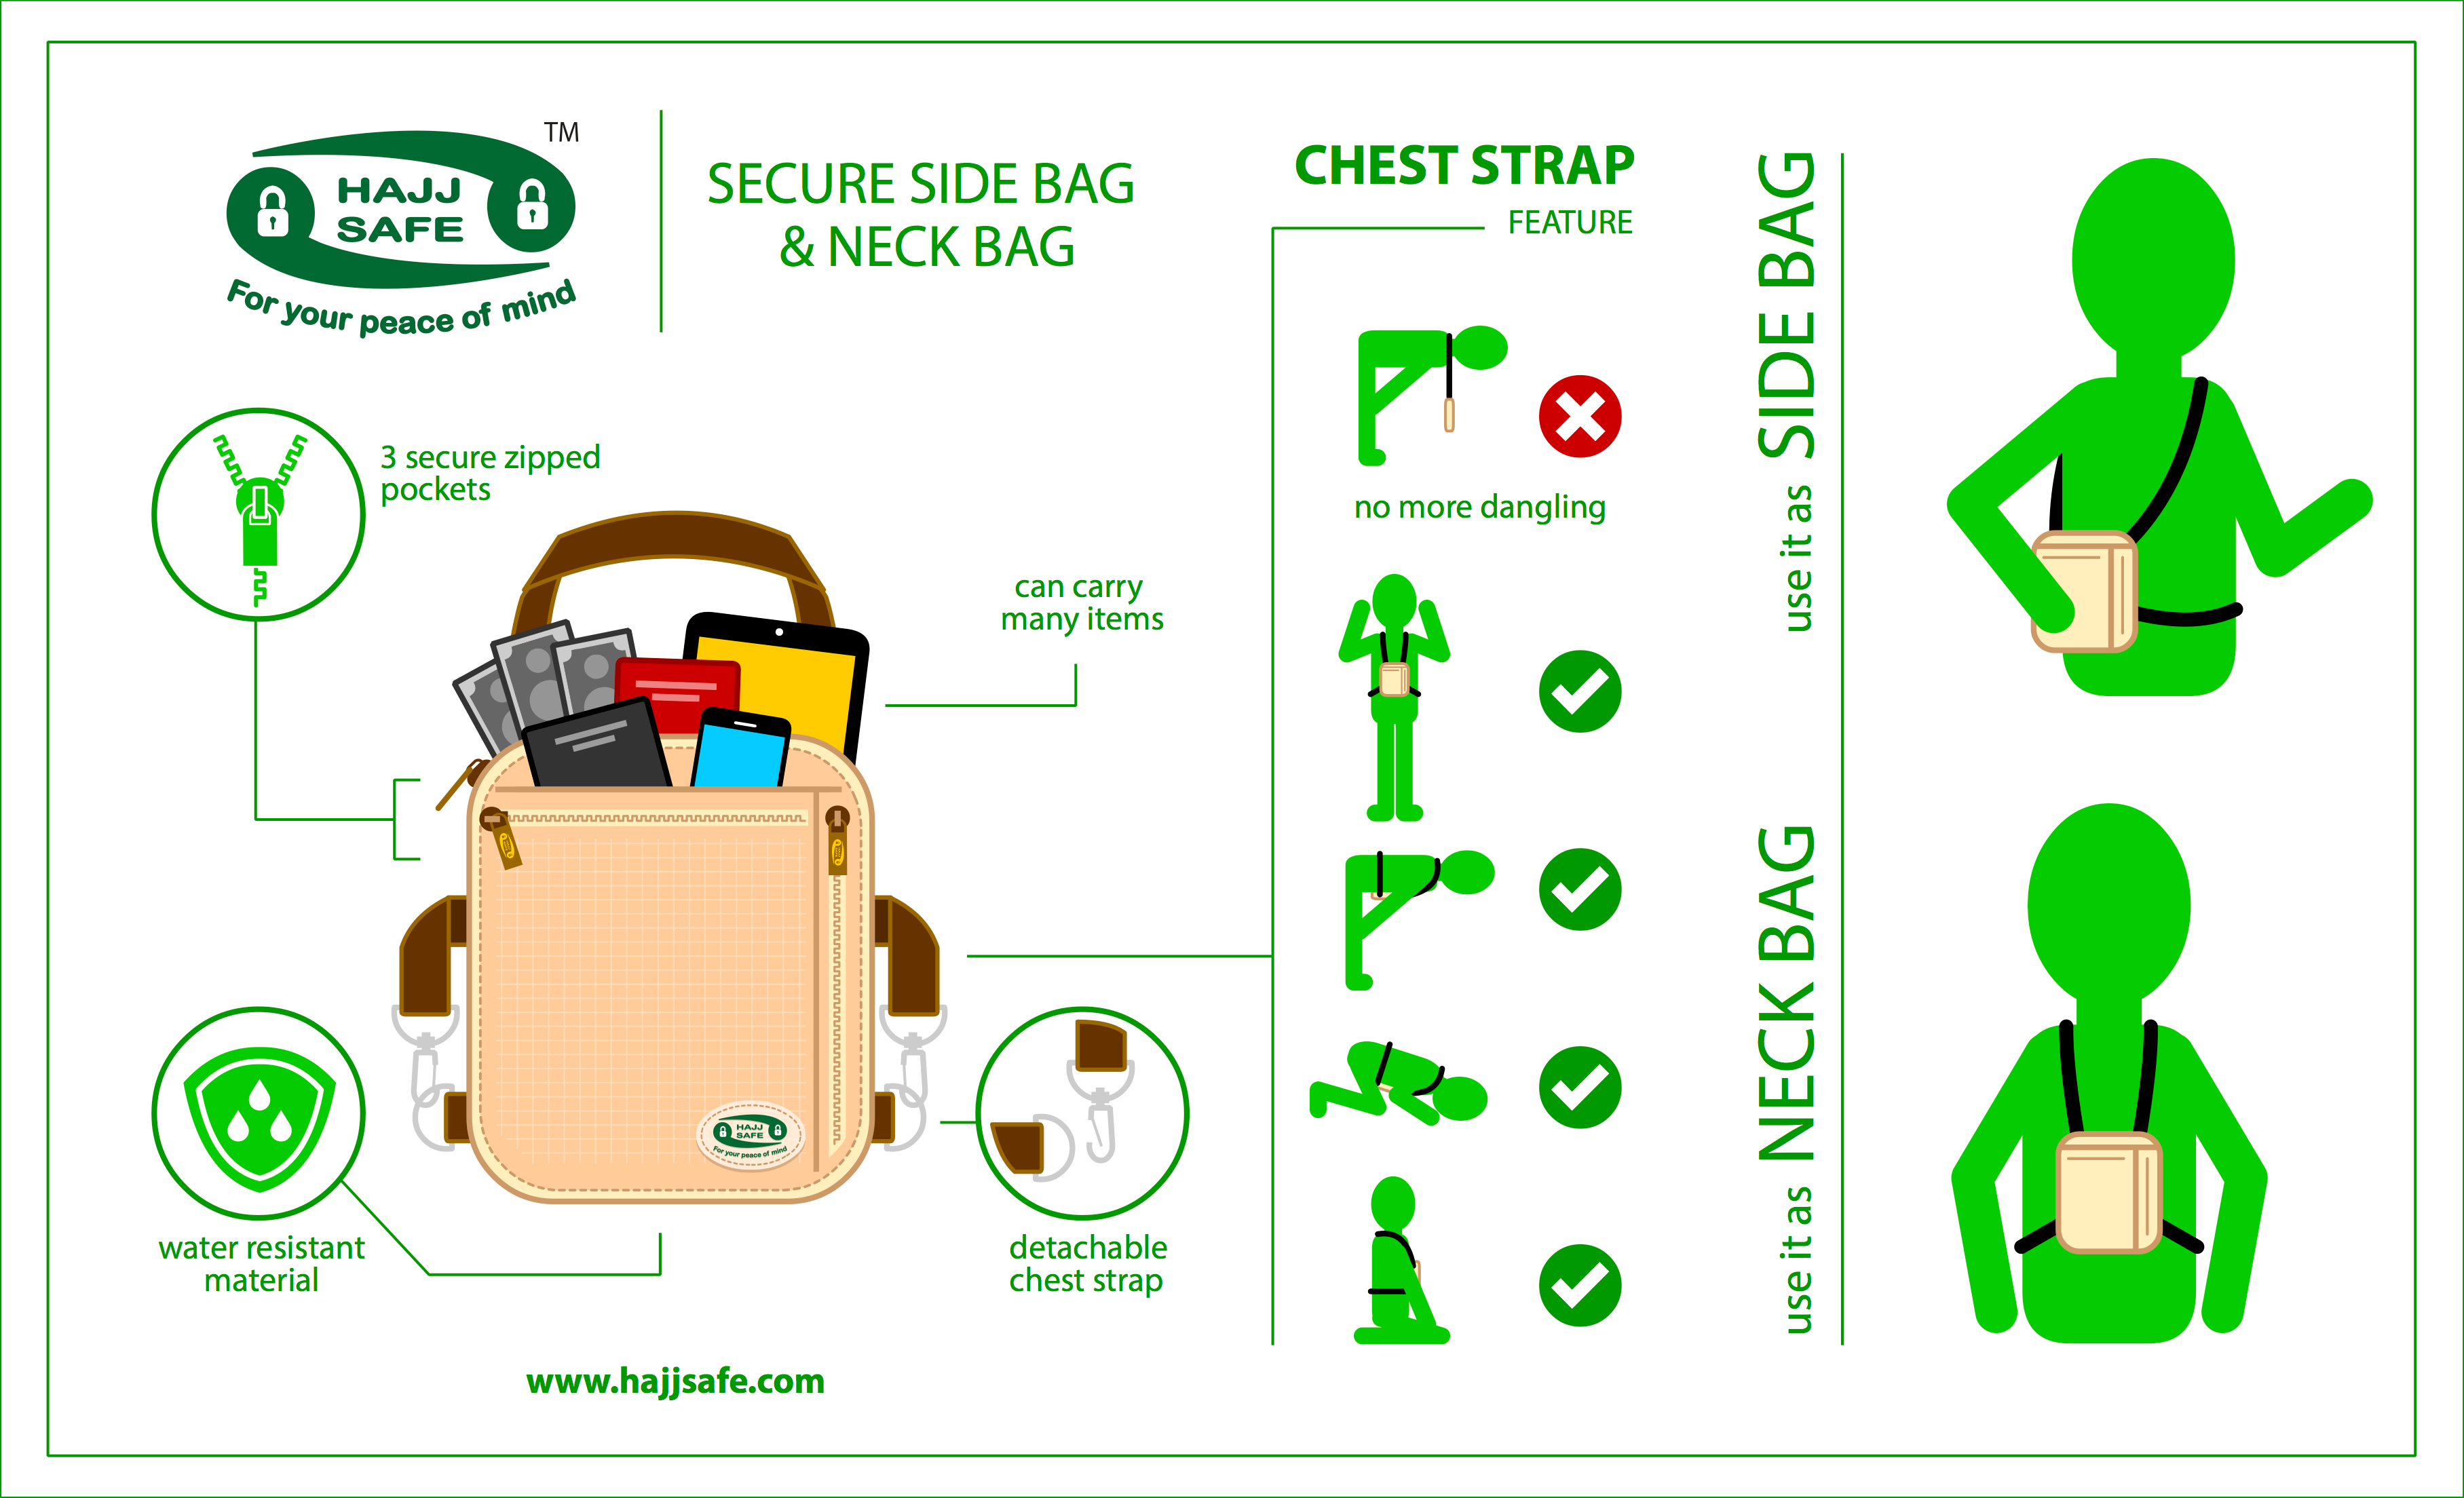 hajj-safe-secure-neck-side-bag-1.png